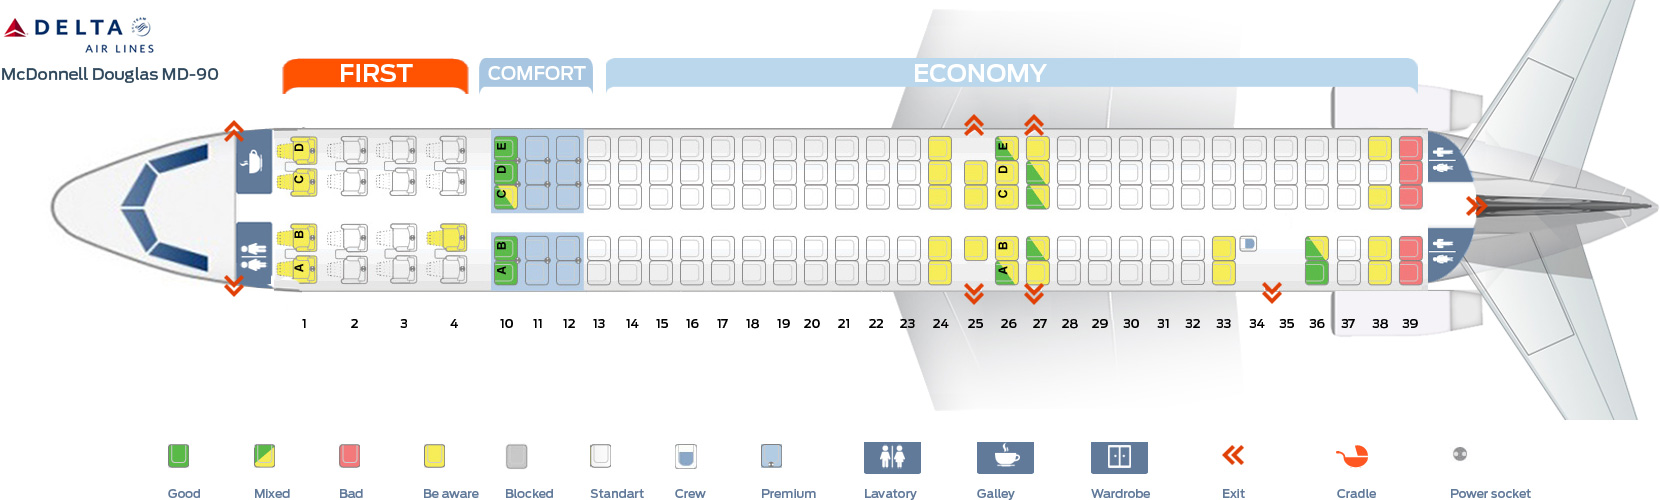 Super 80 Aircraft Seating Chart